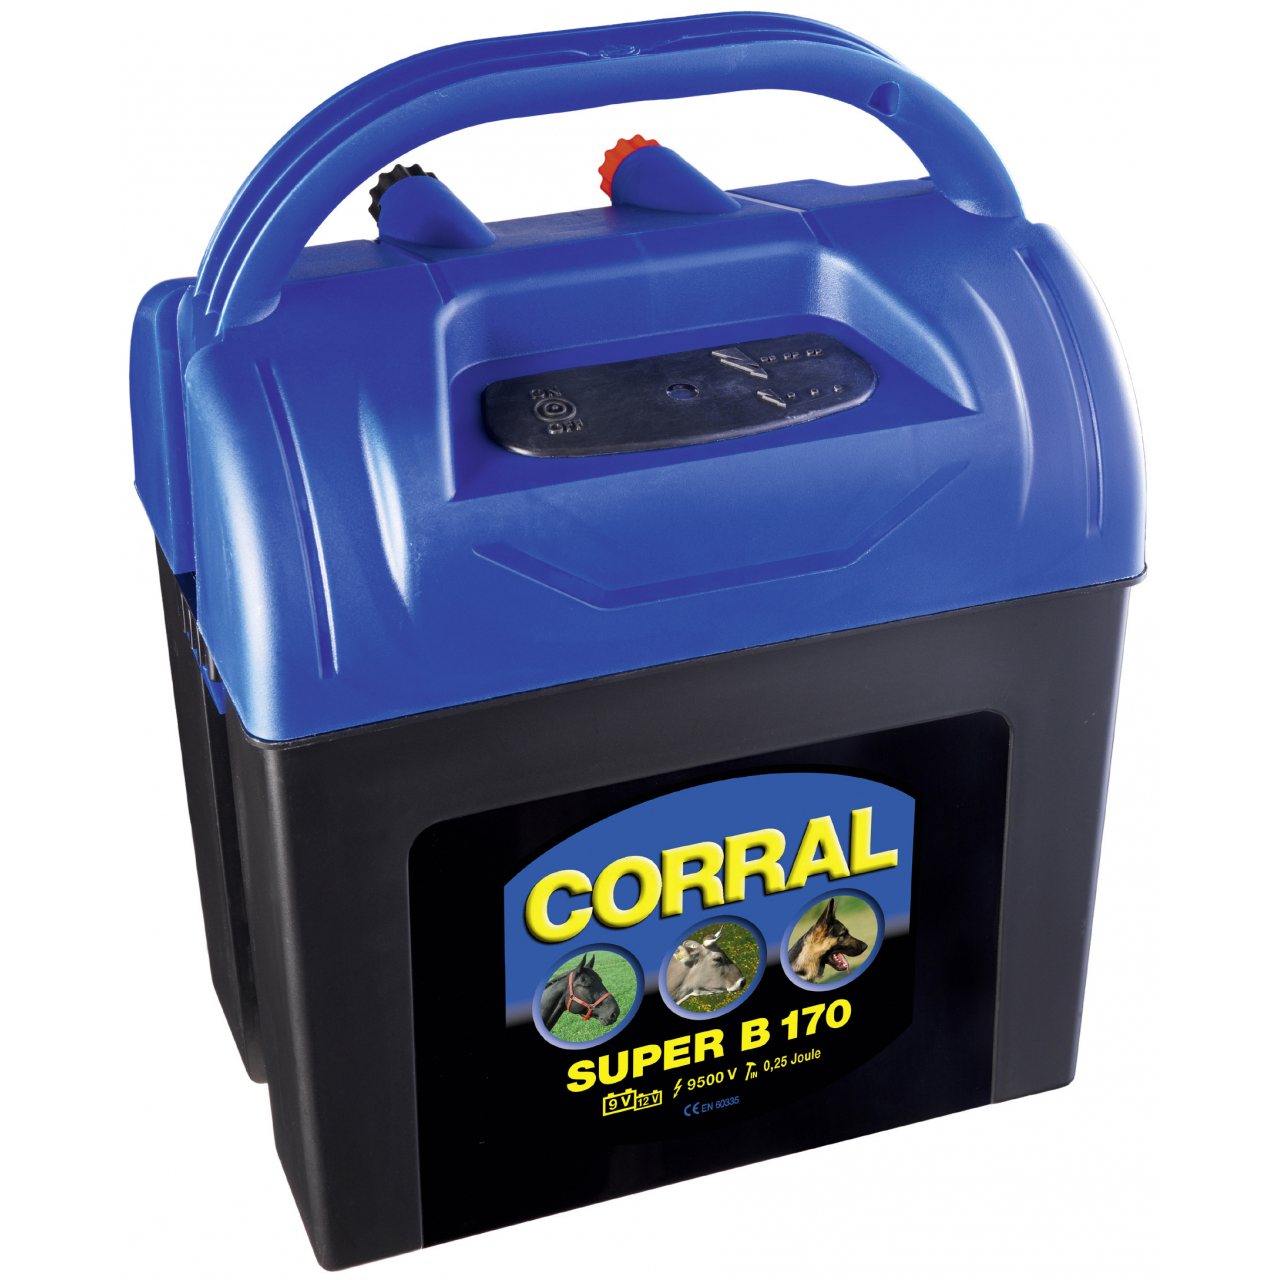 Corral Super B 170 villanypásztor készülék - 12 V / 0,32 J, 9 V / 0,25 J